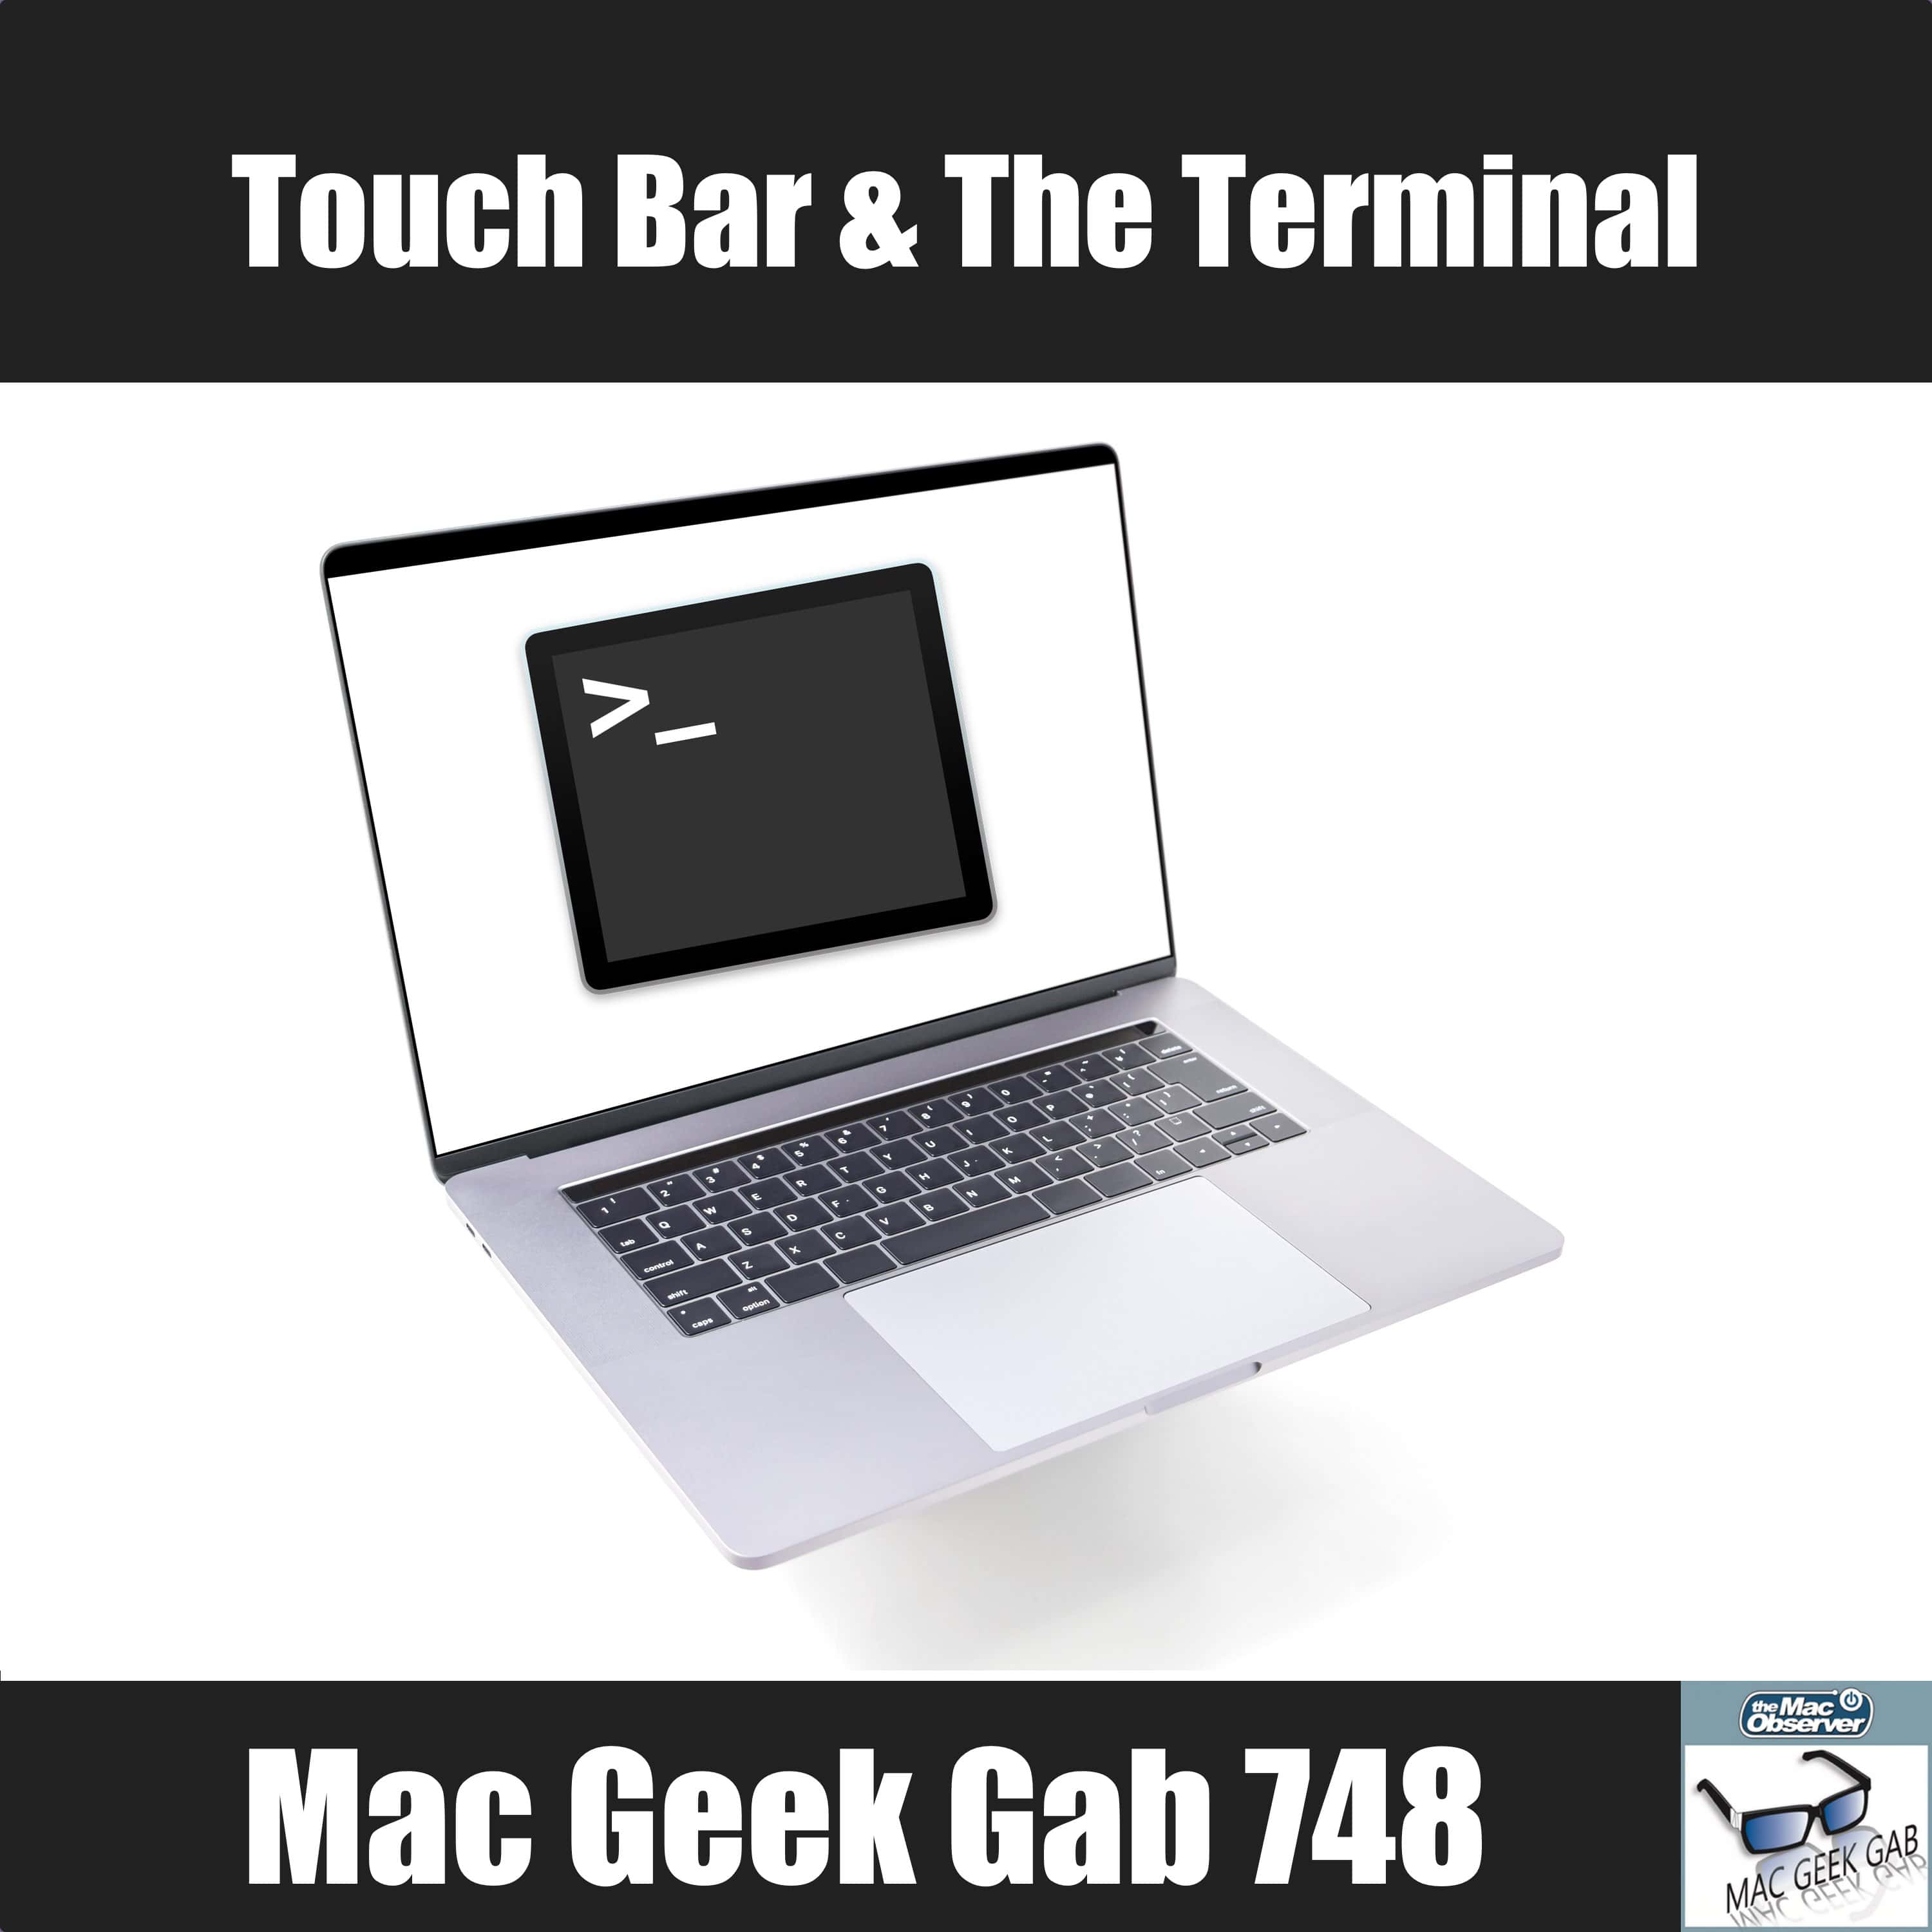 Touch Bar & The Terminal – Mac Geek Gab Podcast 748